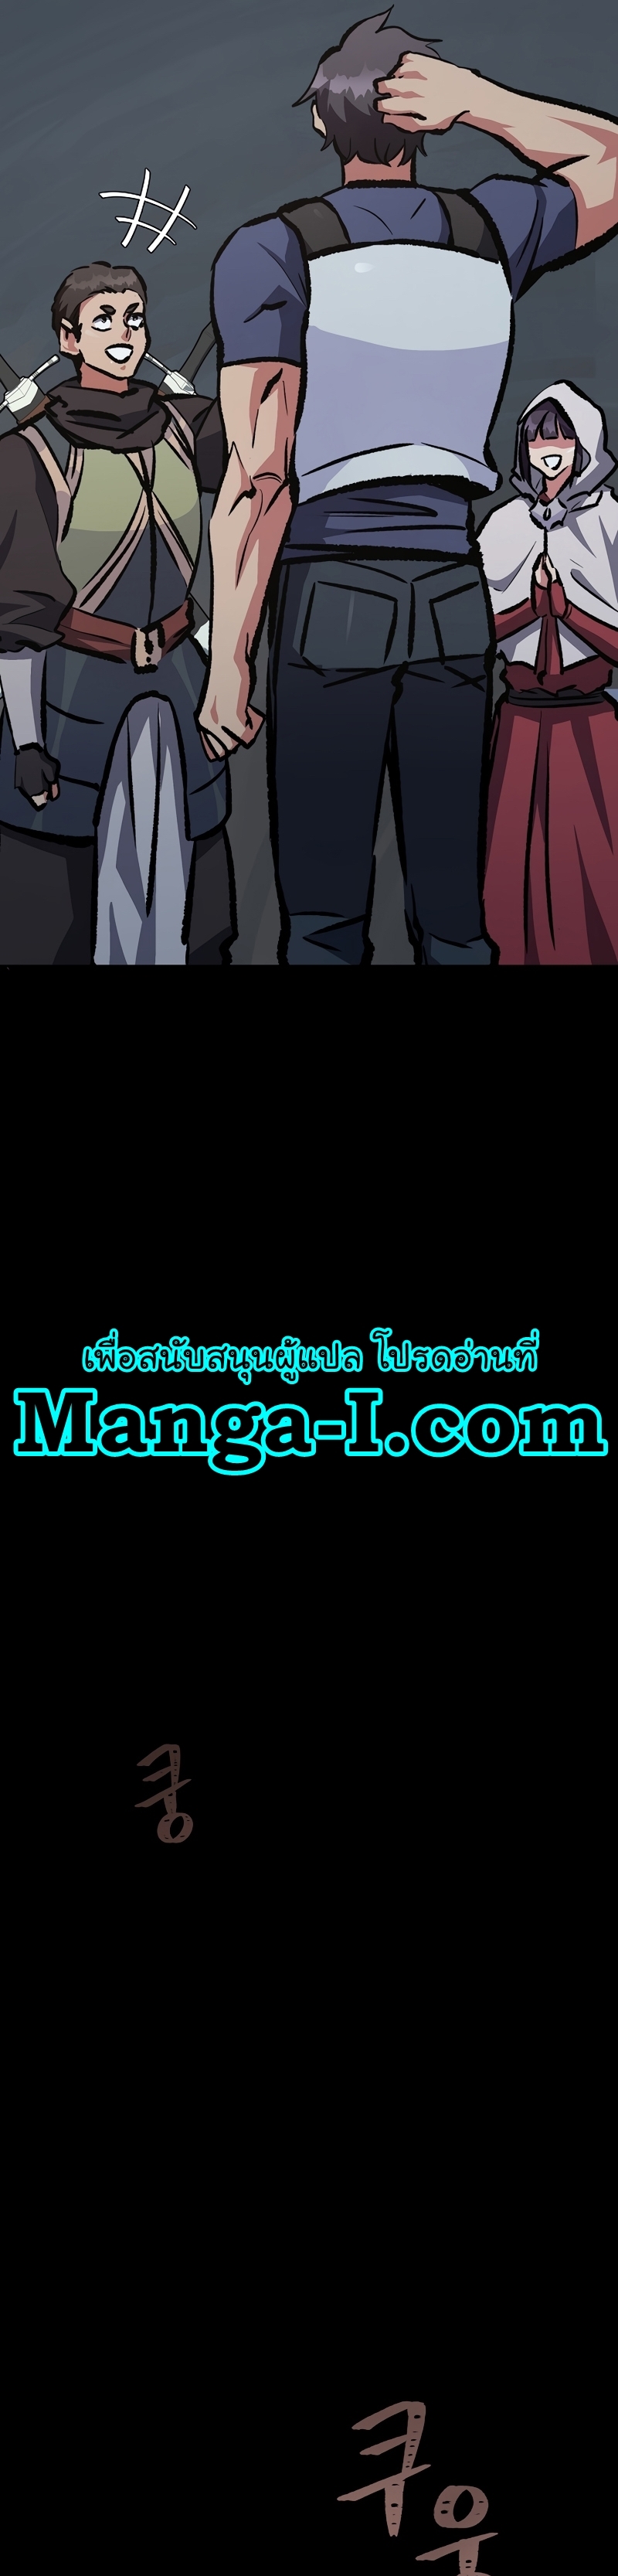 Manga Manhwa Level 1 Player 75 (13)